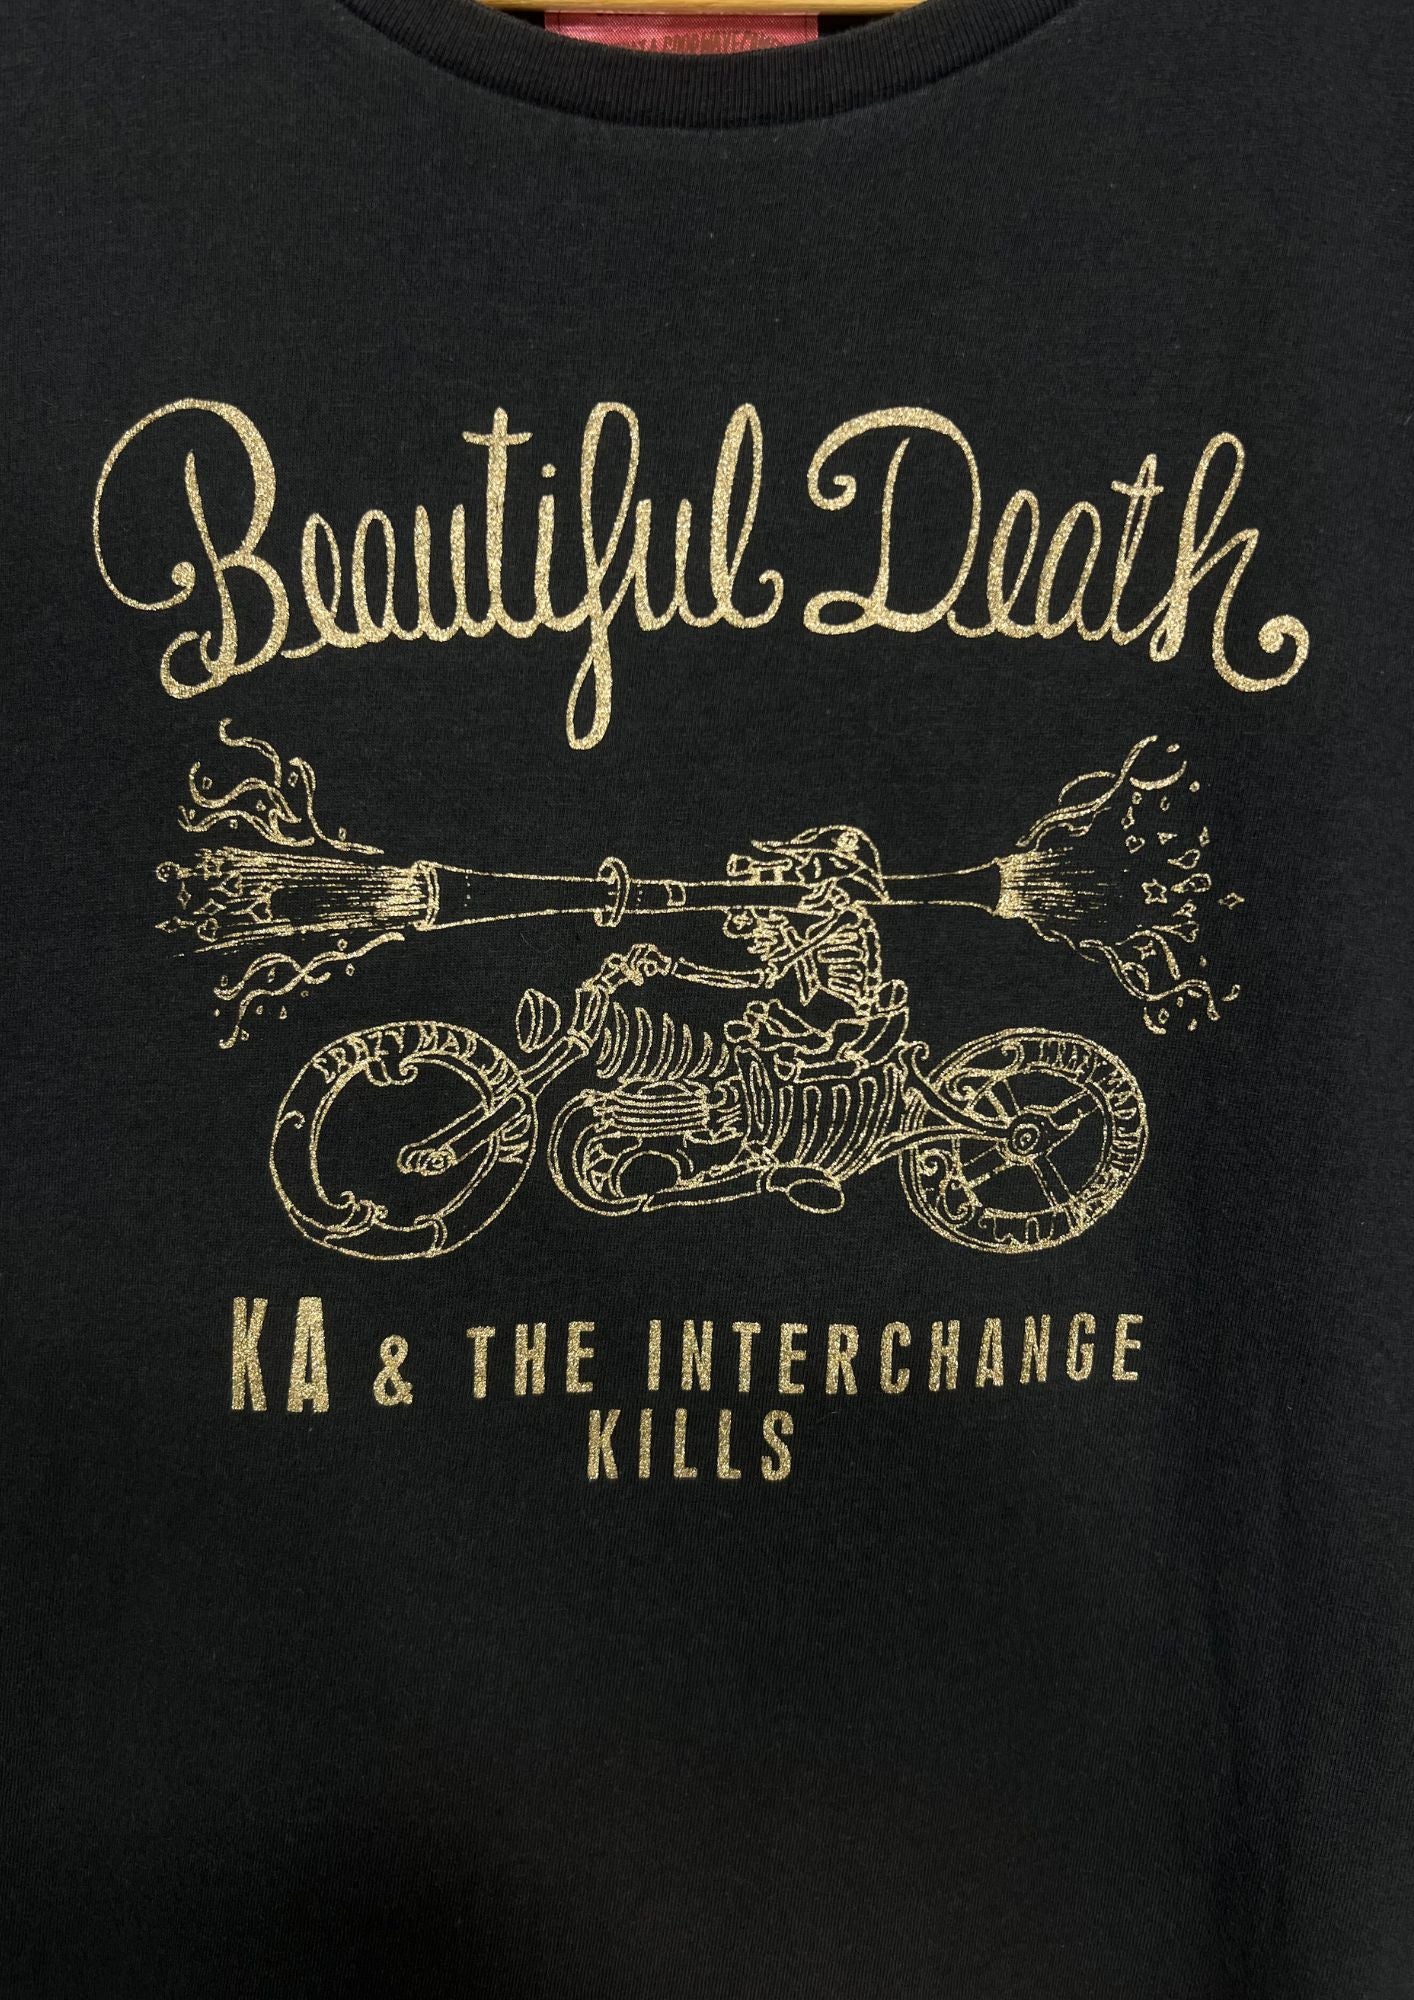 2016 KENICHI ASAI & THE INTERCHANGE KILLS 'Beautiful Death' Japanese Band T-shirt